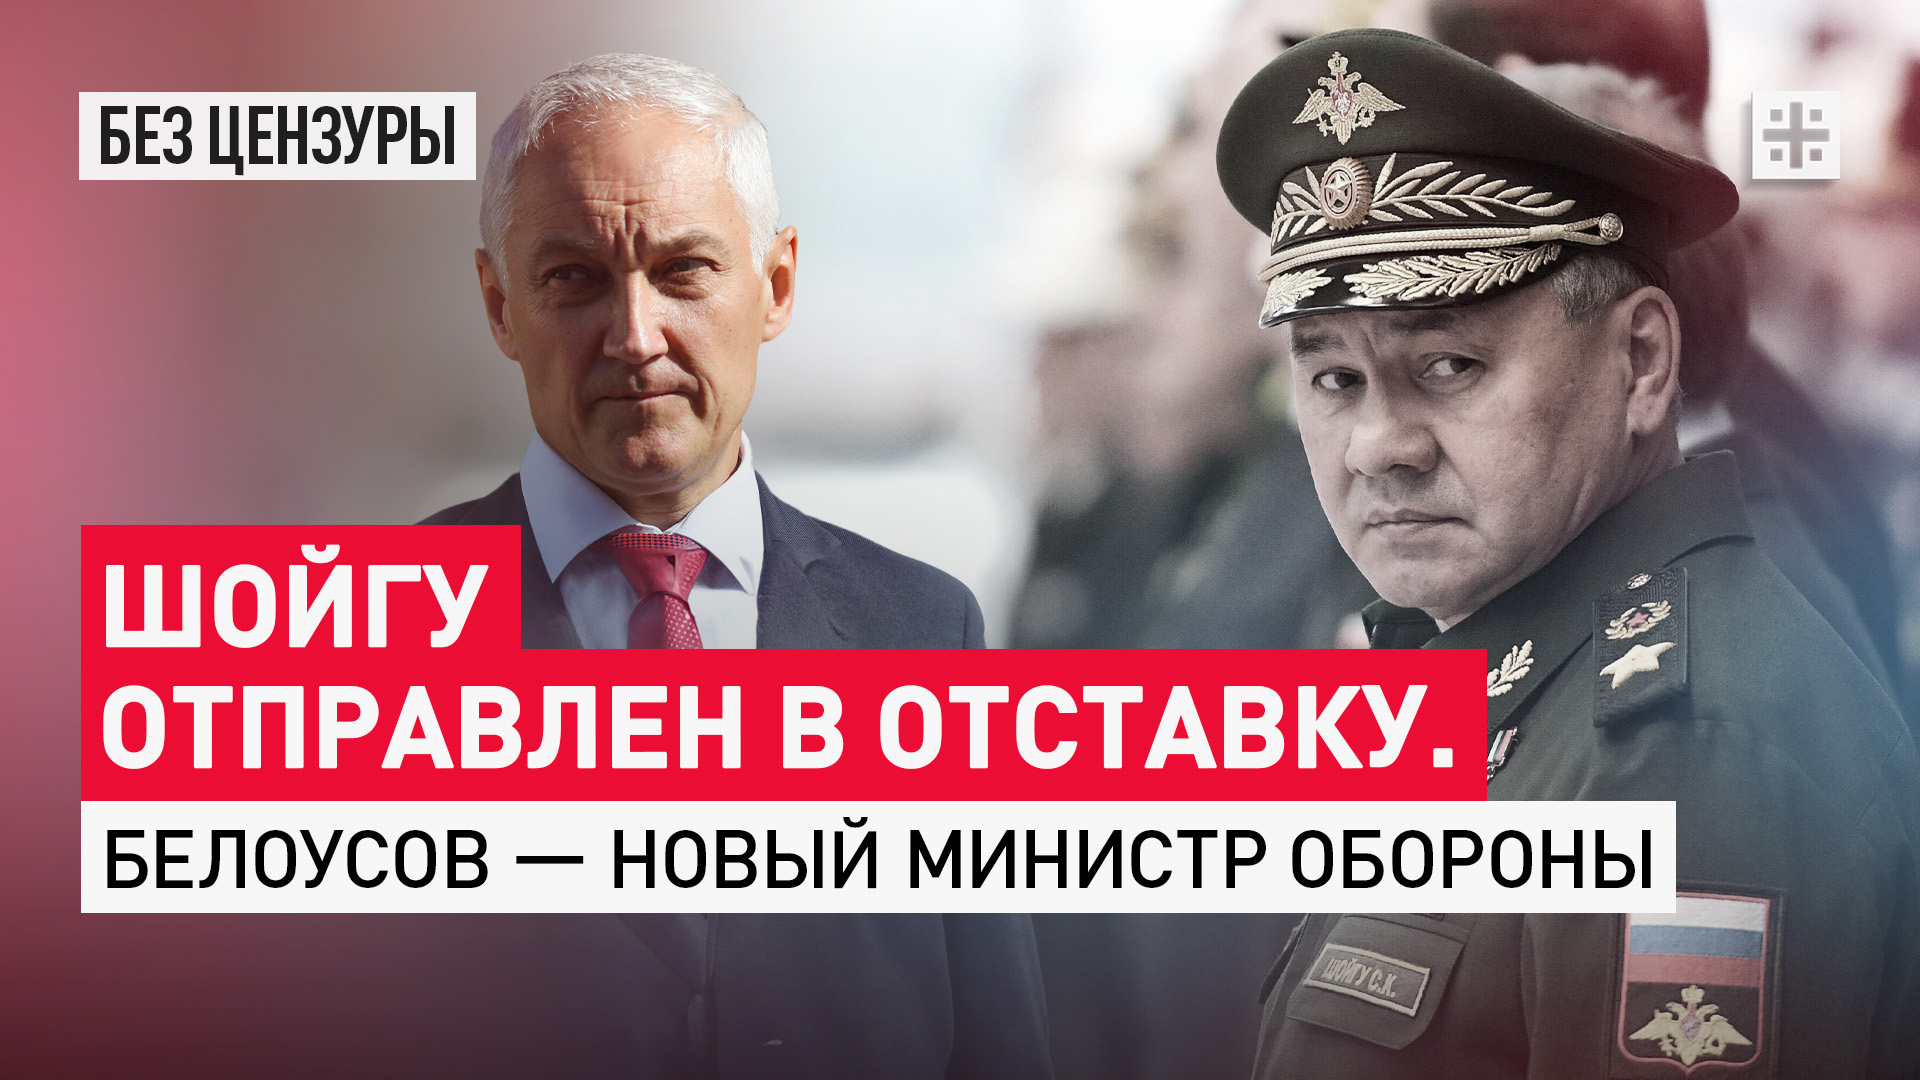 Шойгу отправлен в отставку. Белоусов — новый министр обороны